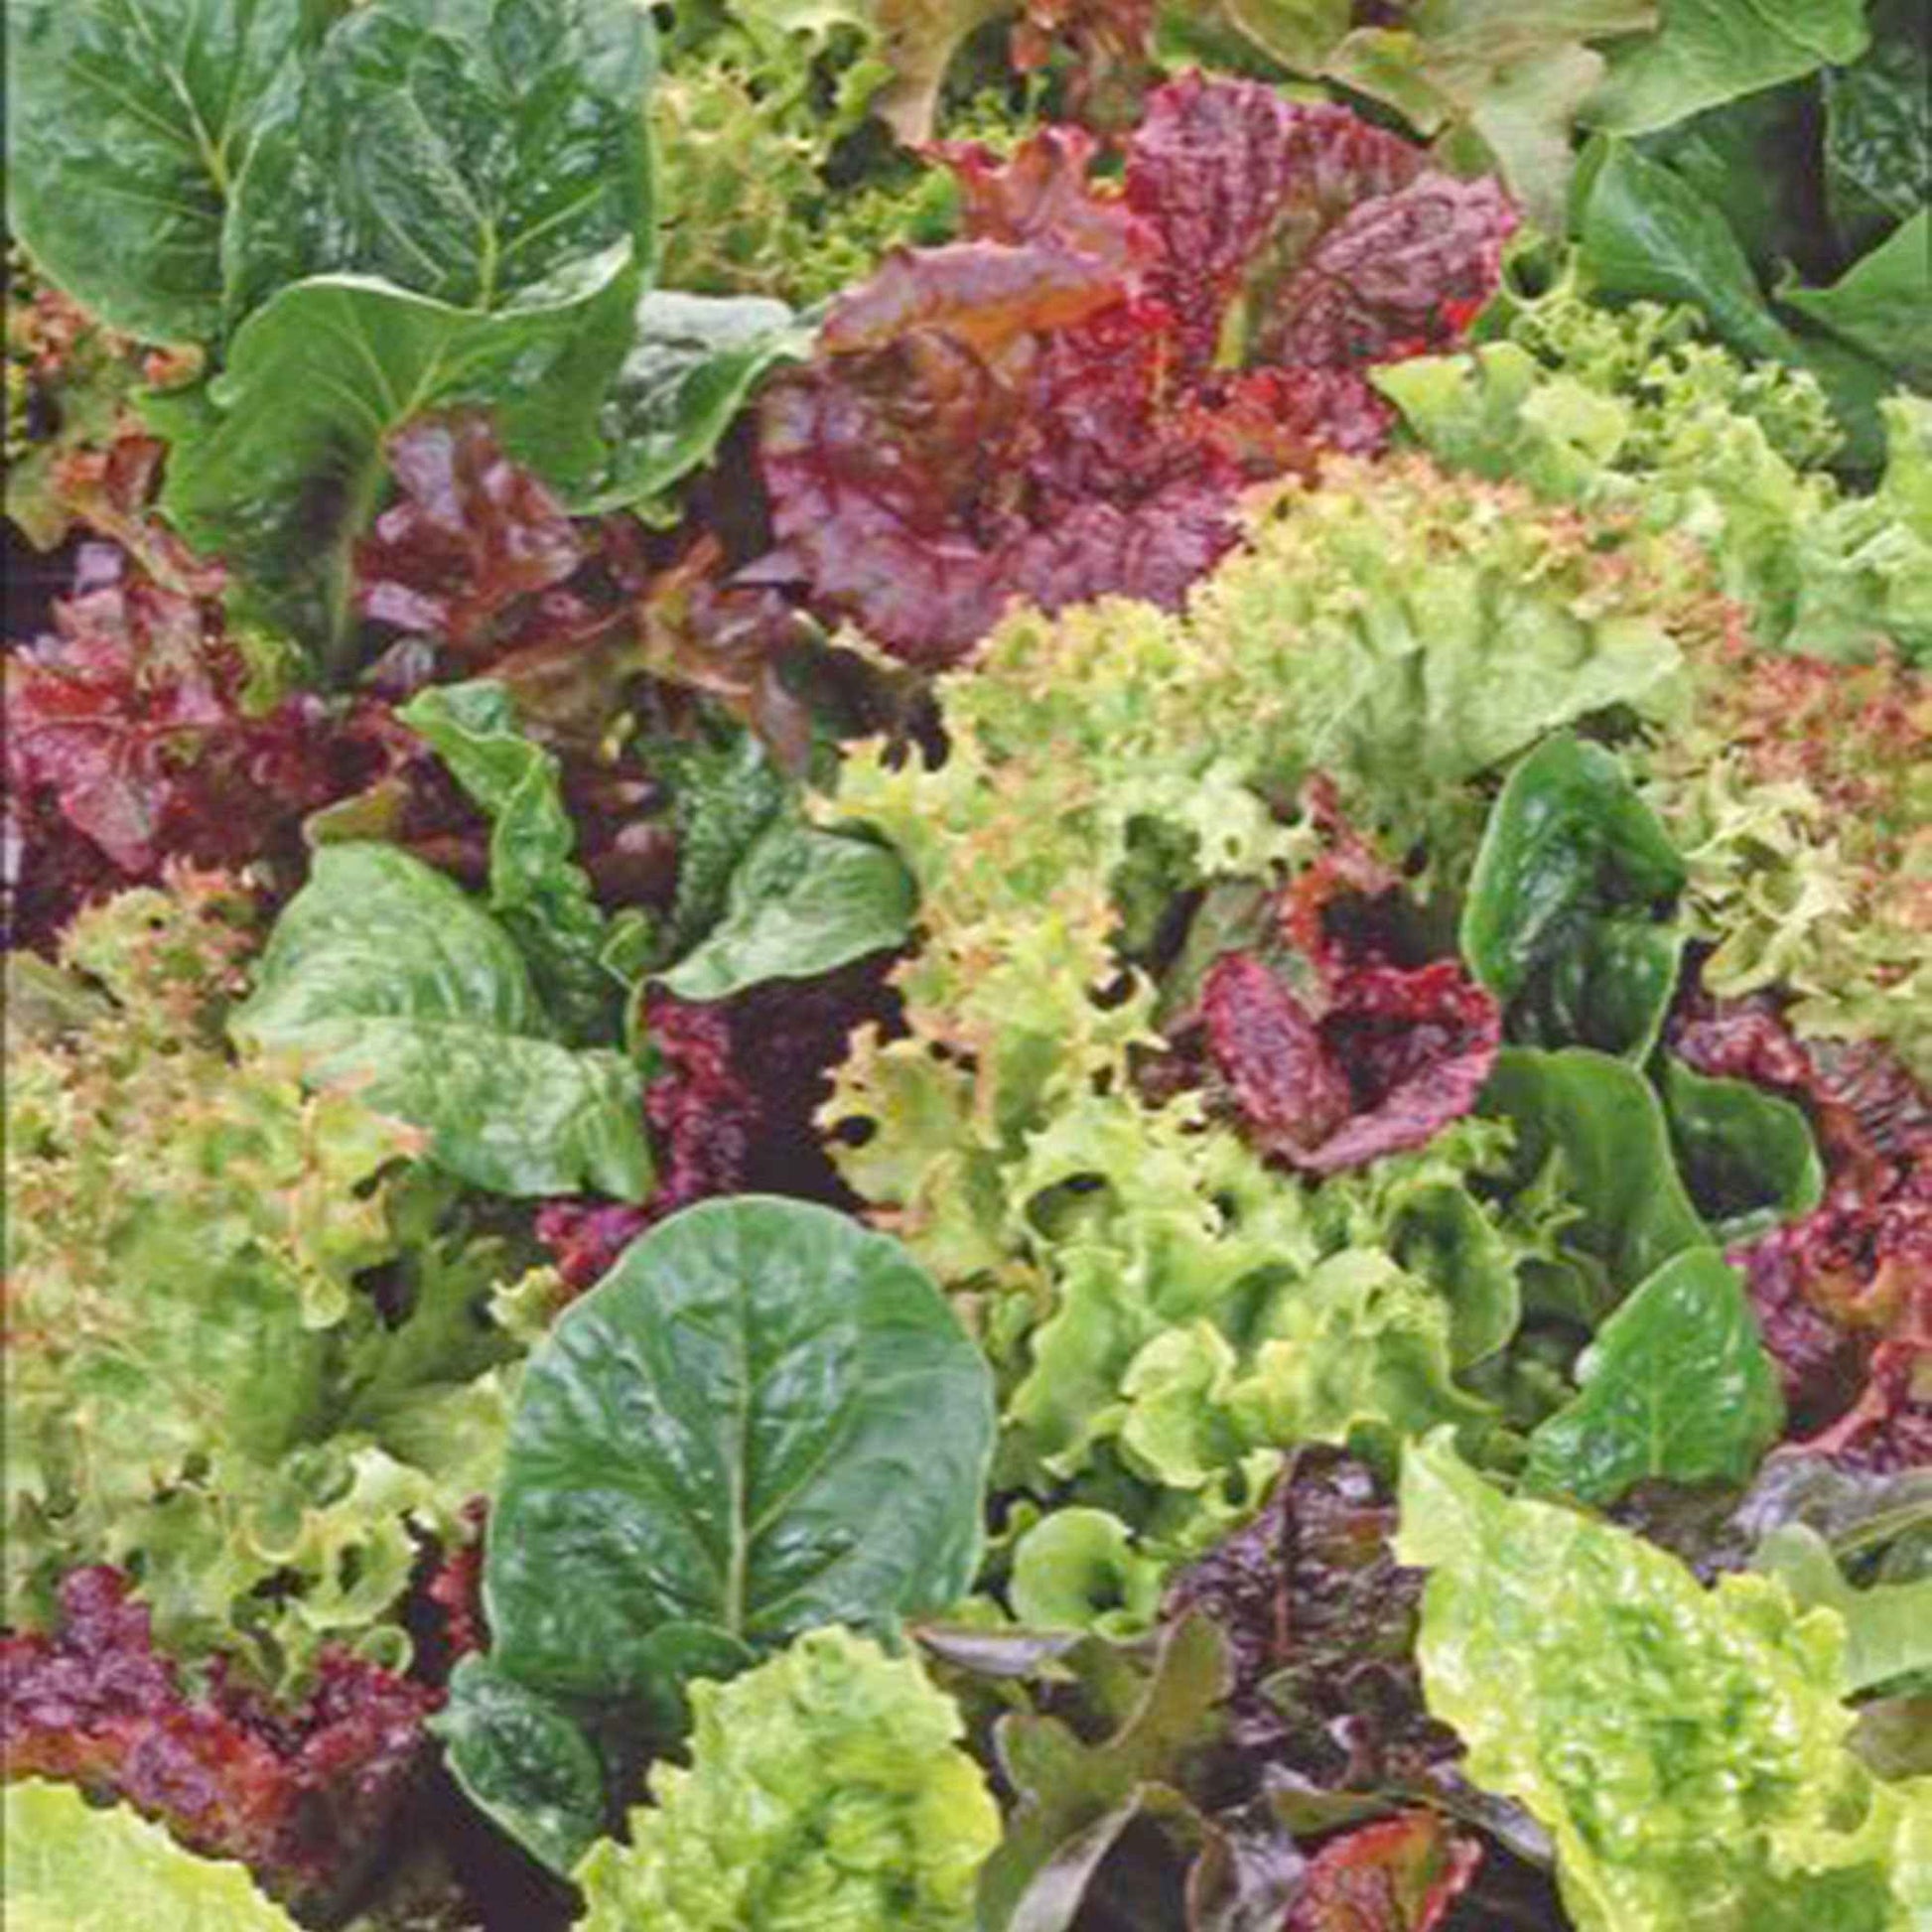 Salat Lactuca - Mischung 10 m² - Gemüsesamen - Bio-Gemüse